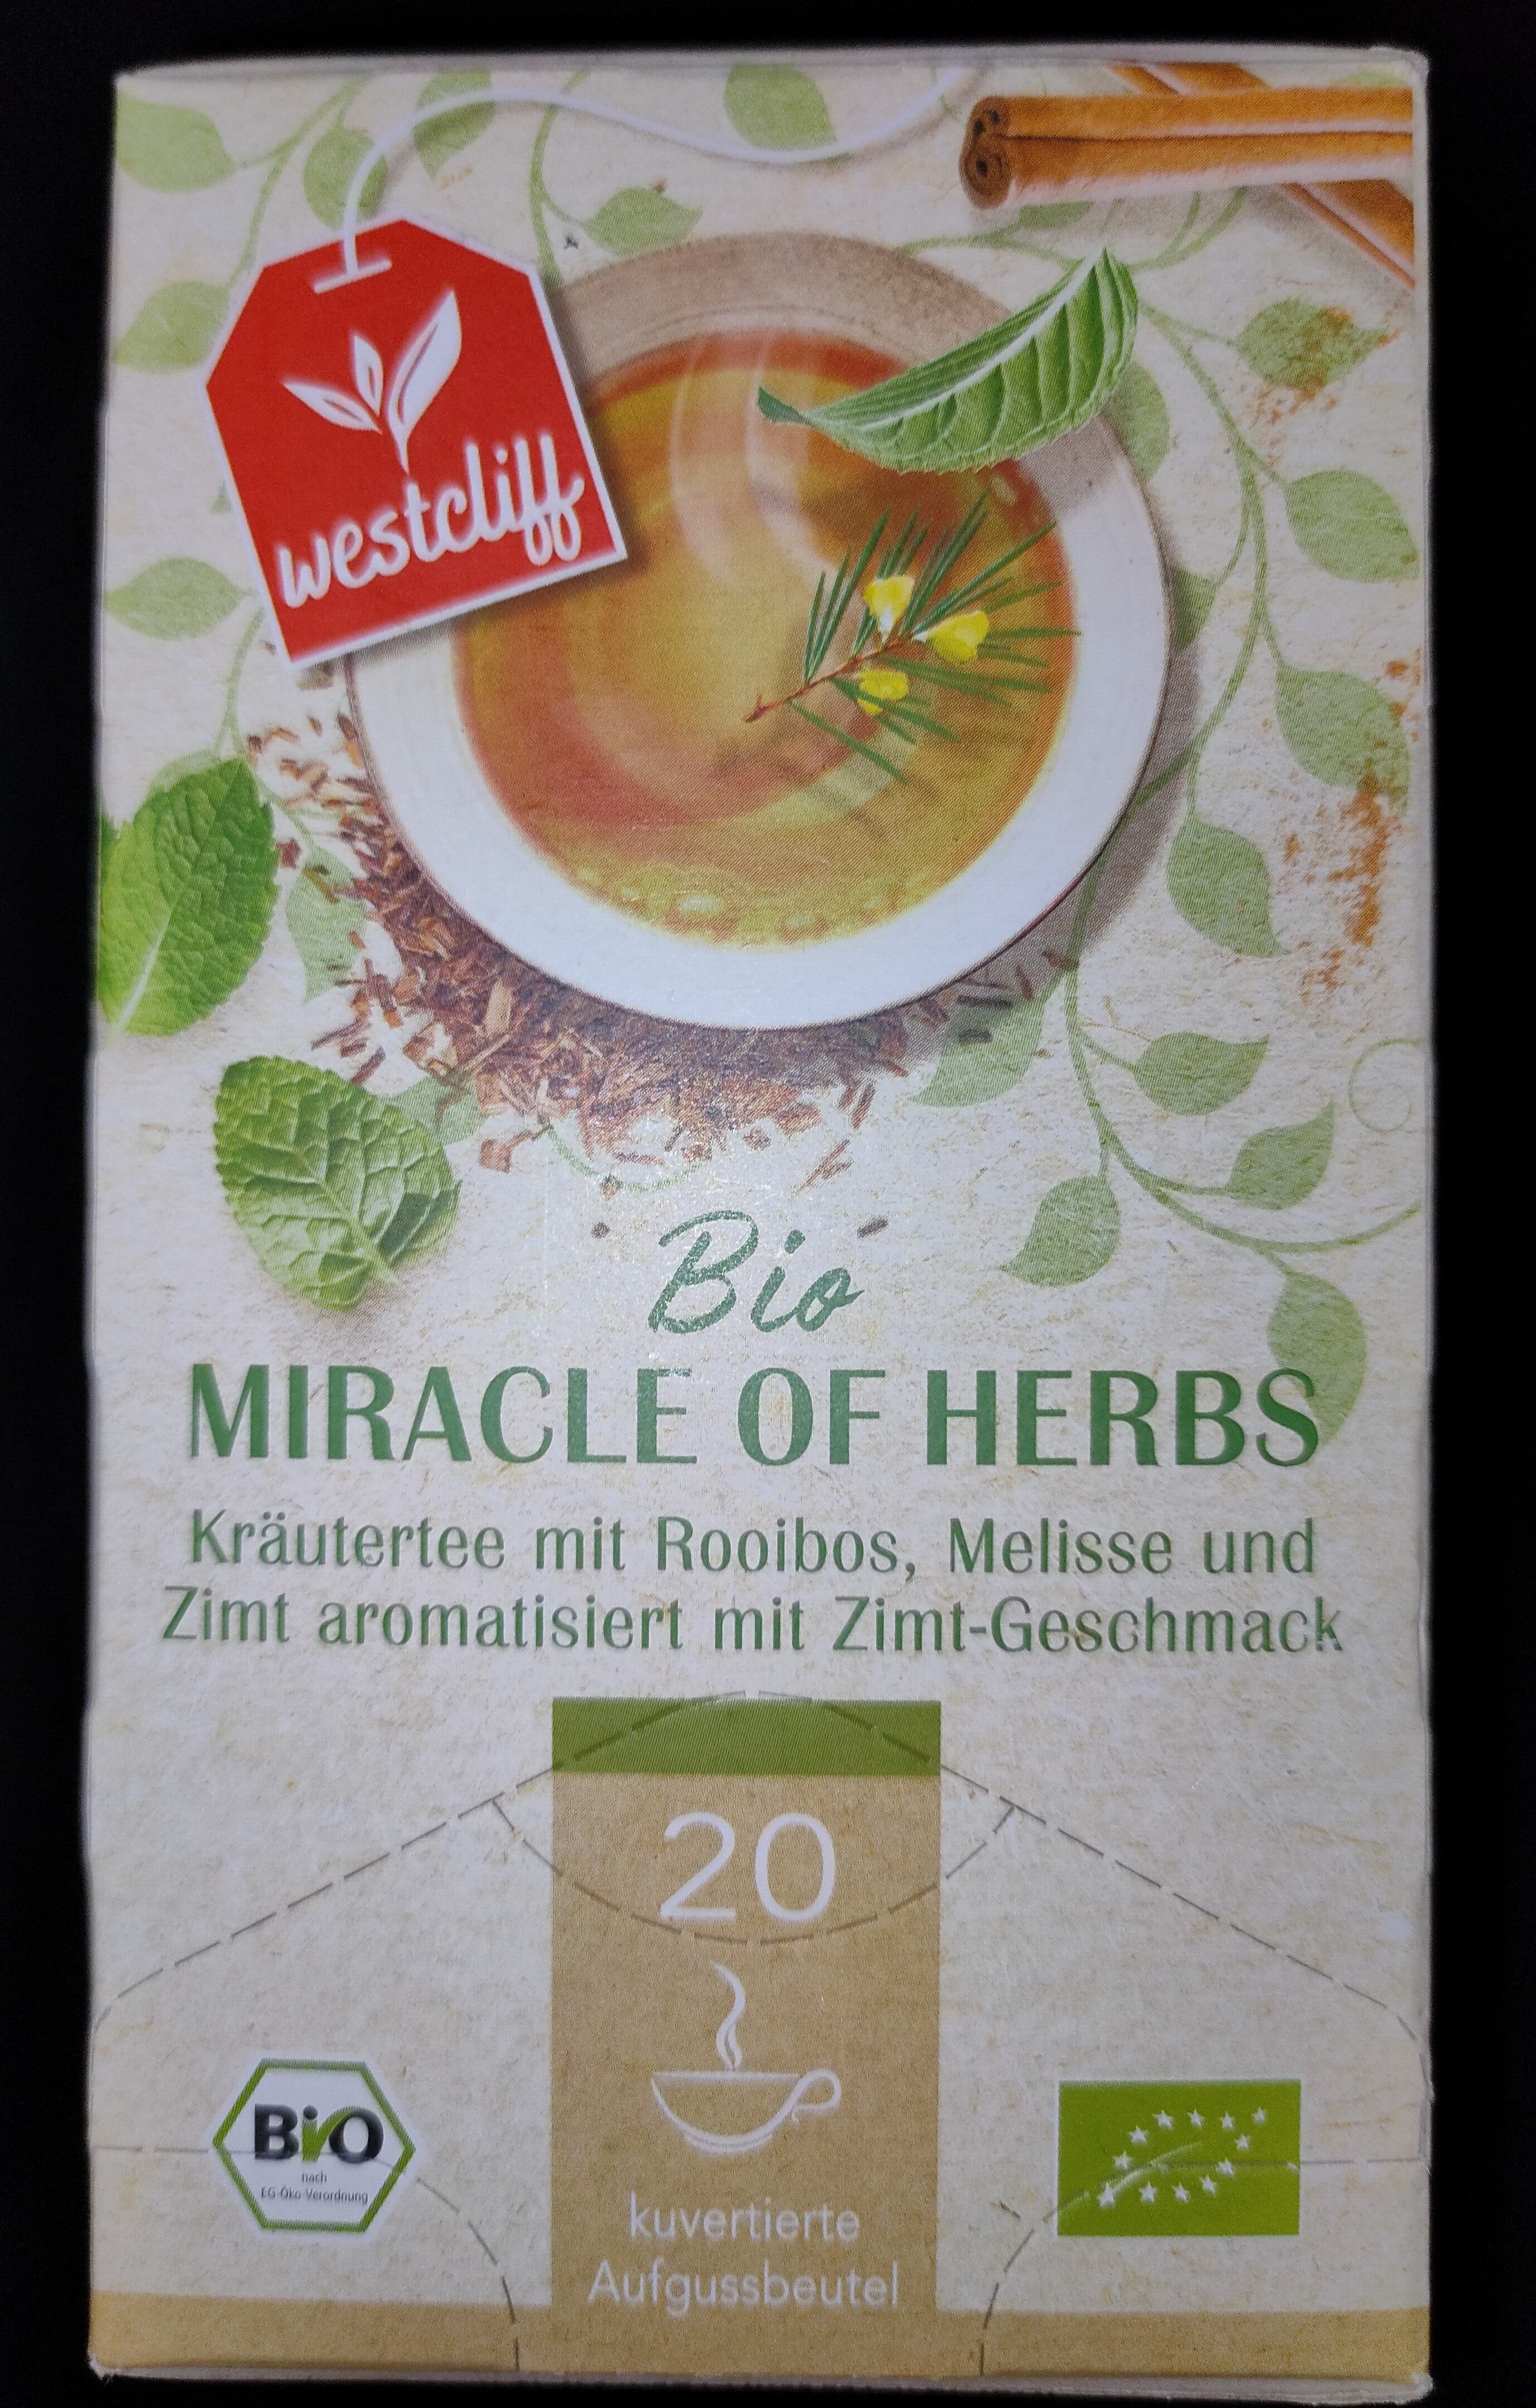 Miracle of Herbs - Bio-Kräutertee - Product - de